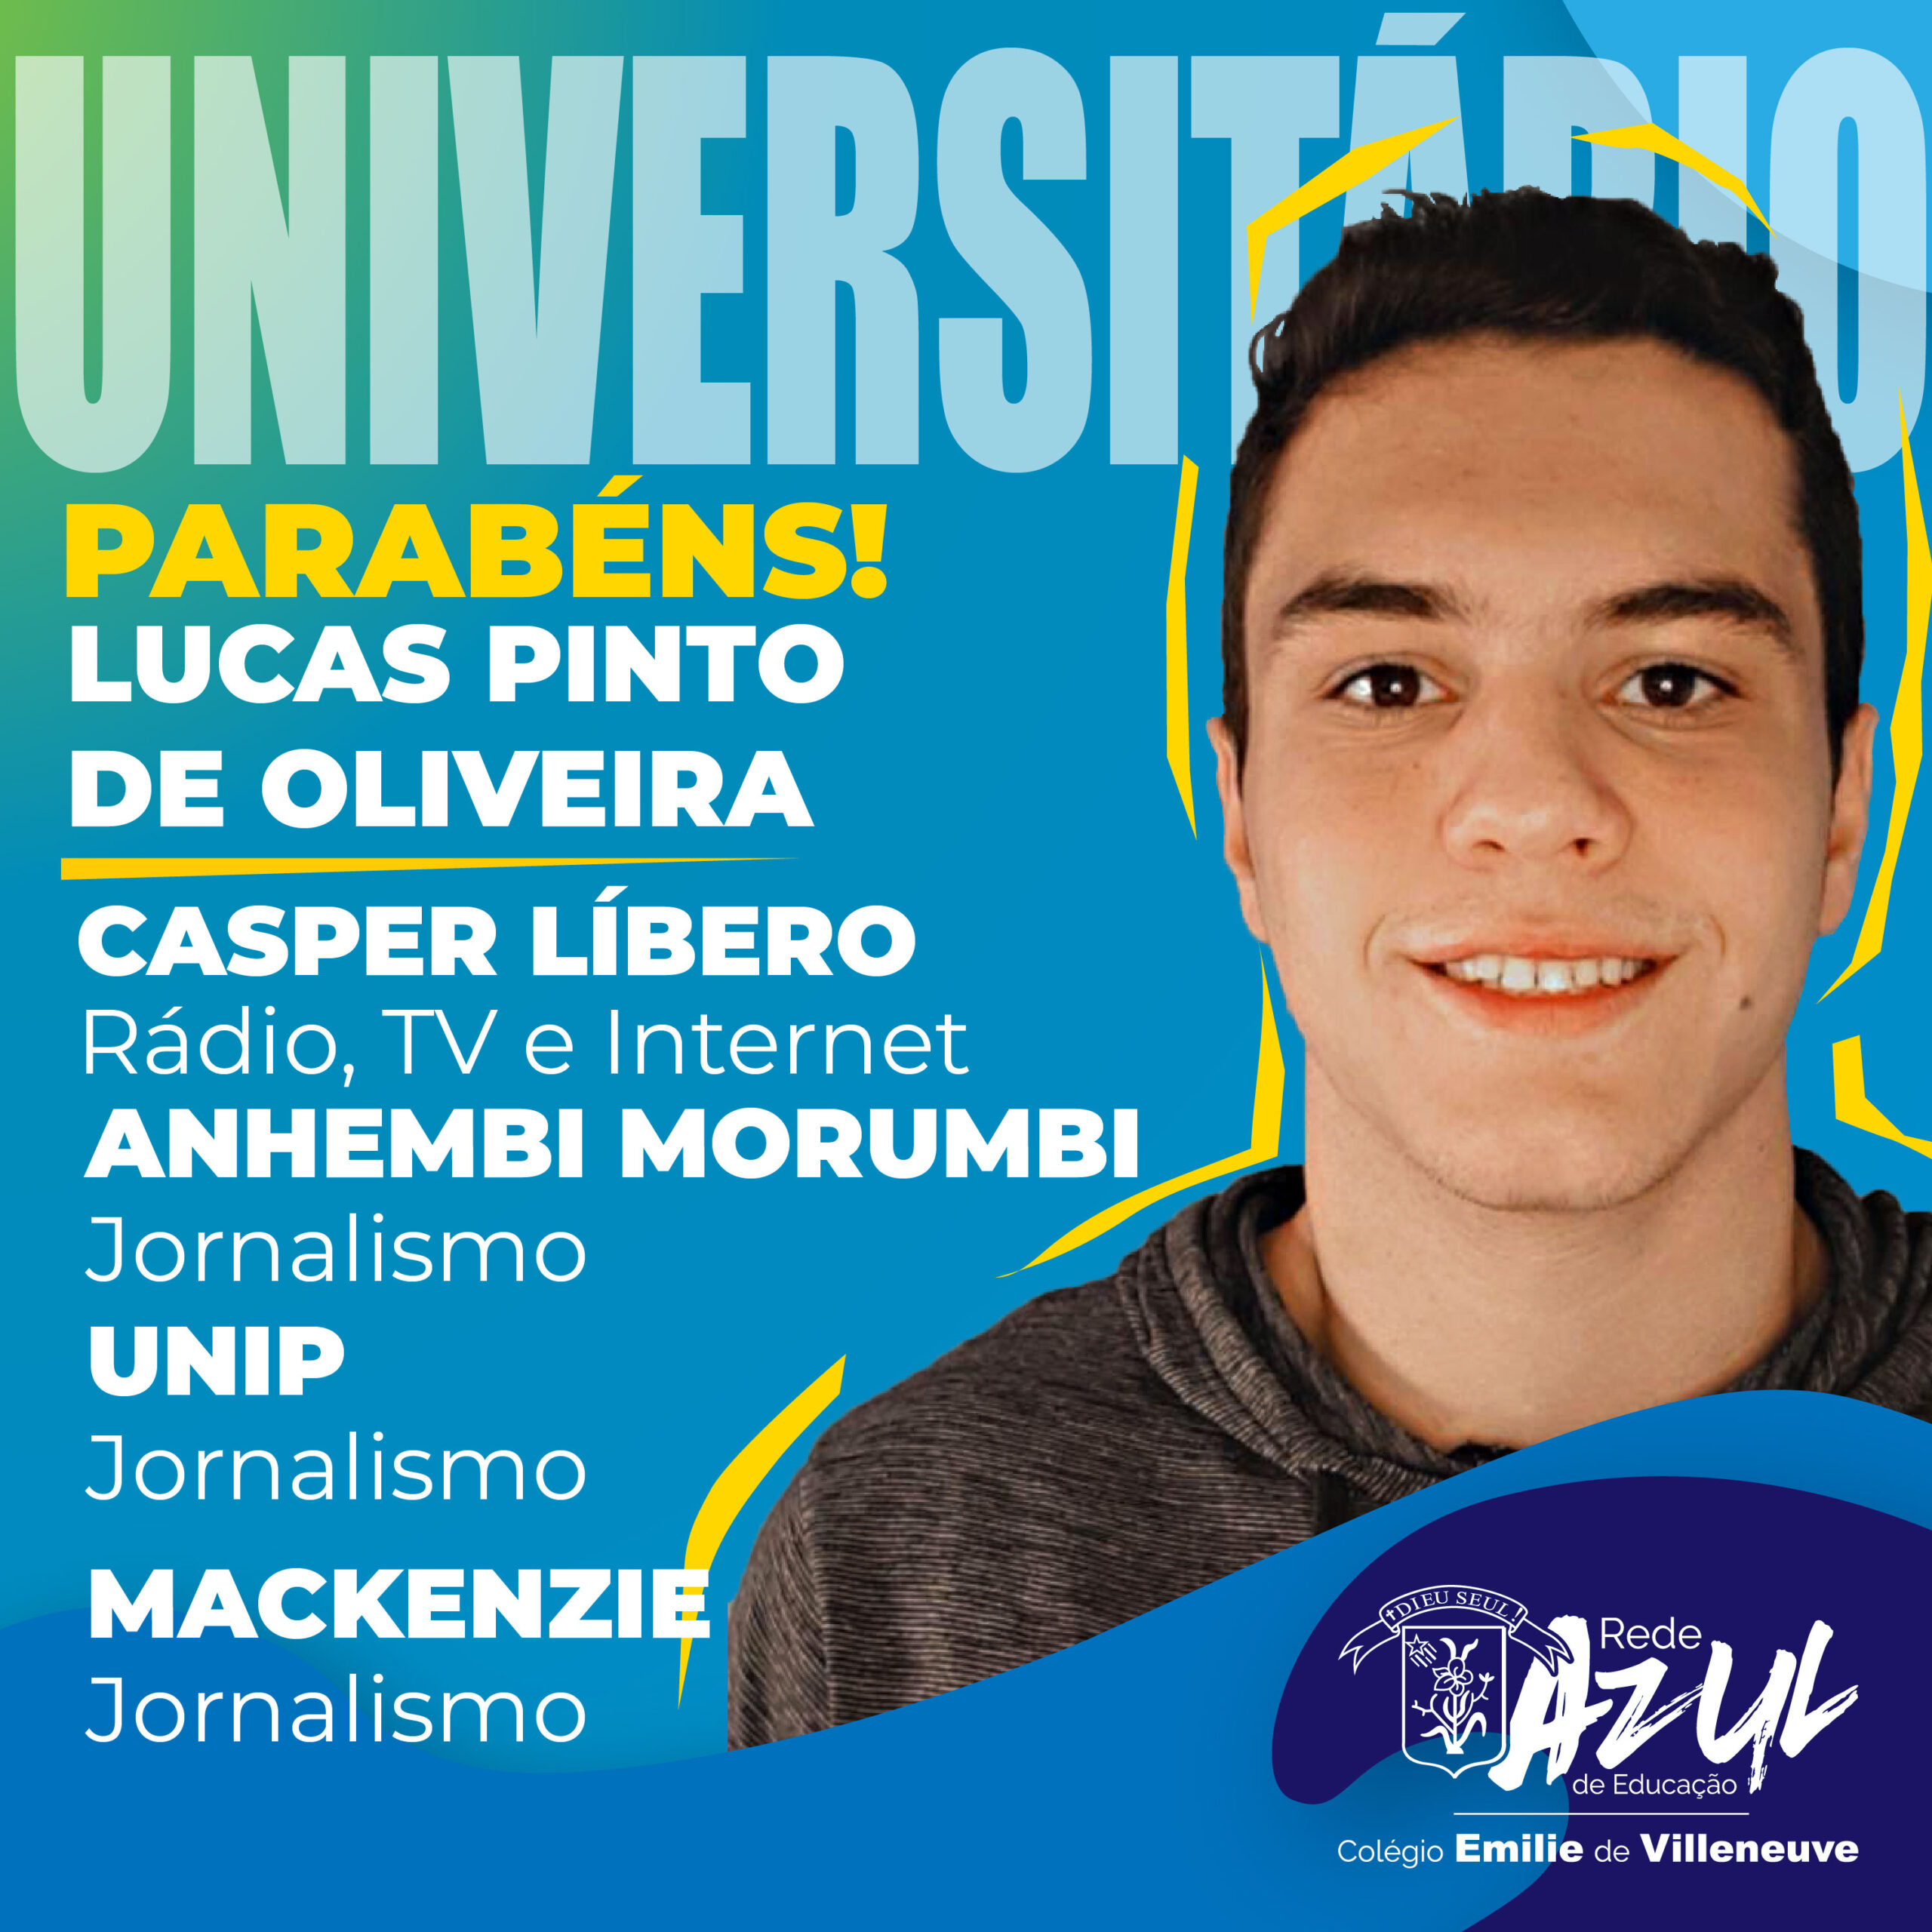 Lucas Pinto de Oliveira - feed